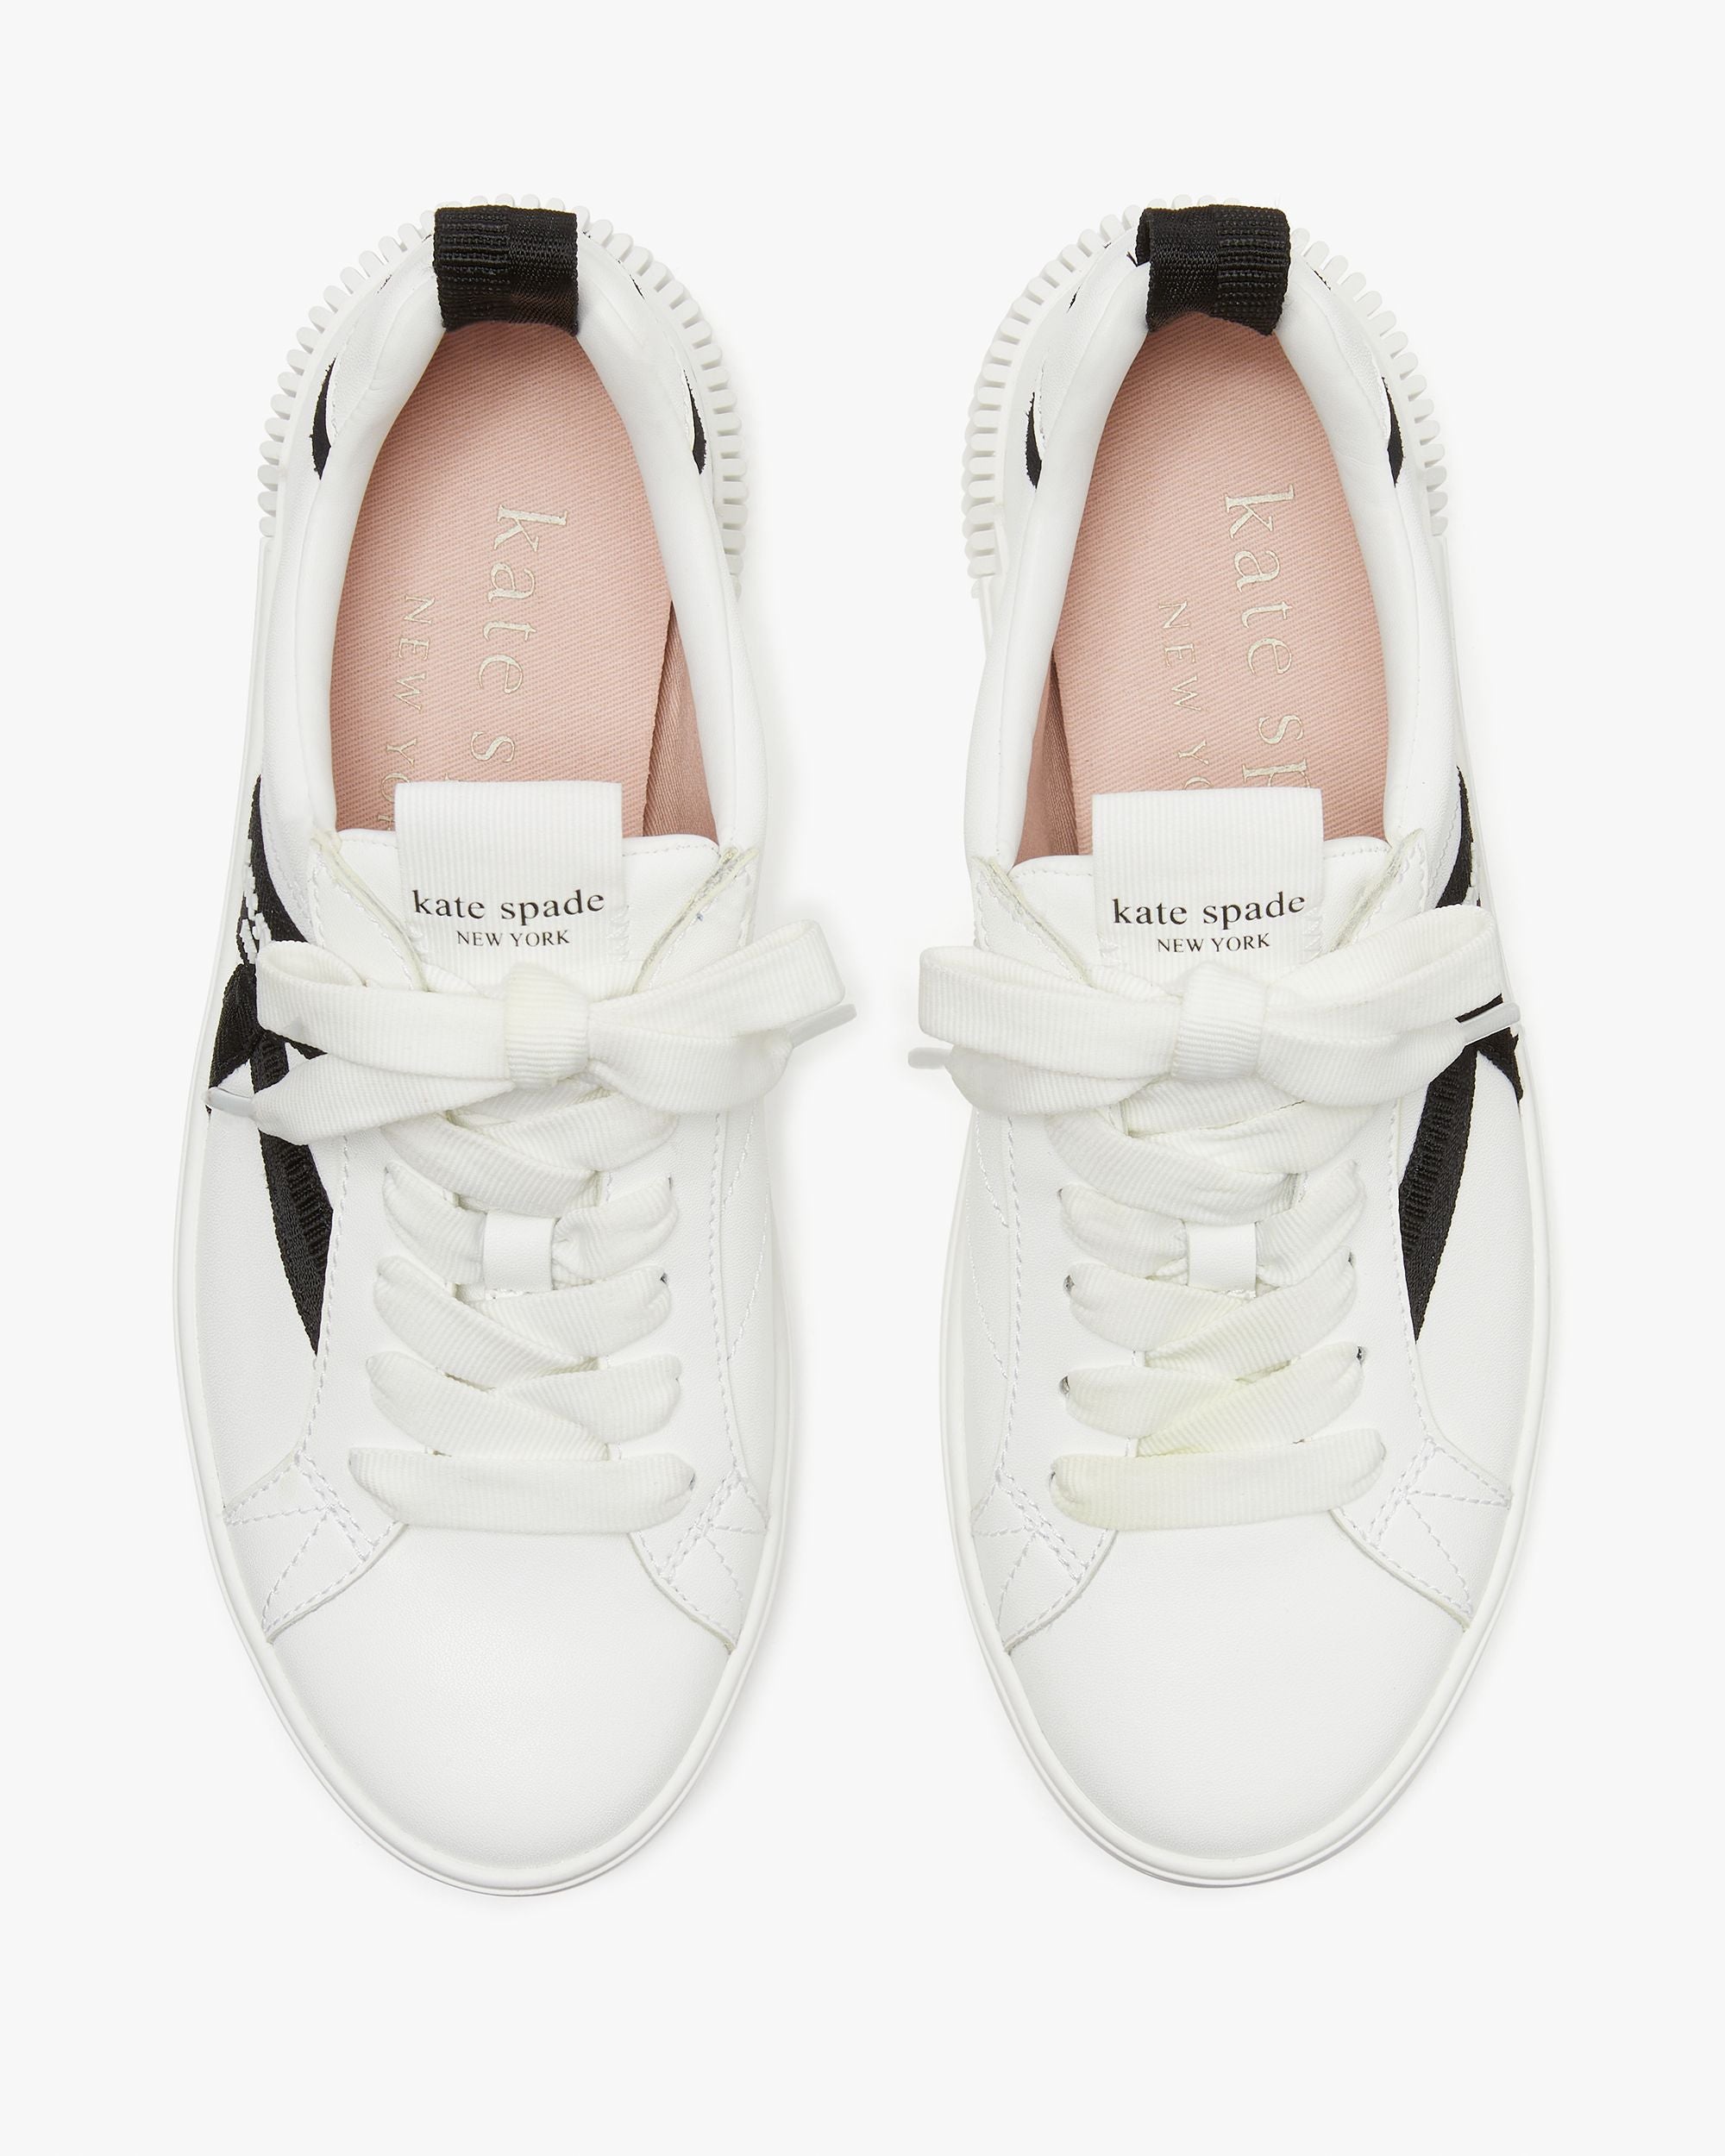 kg693_Signature Sneakers_True White / Black